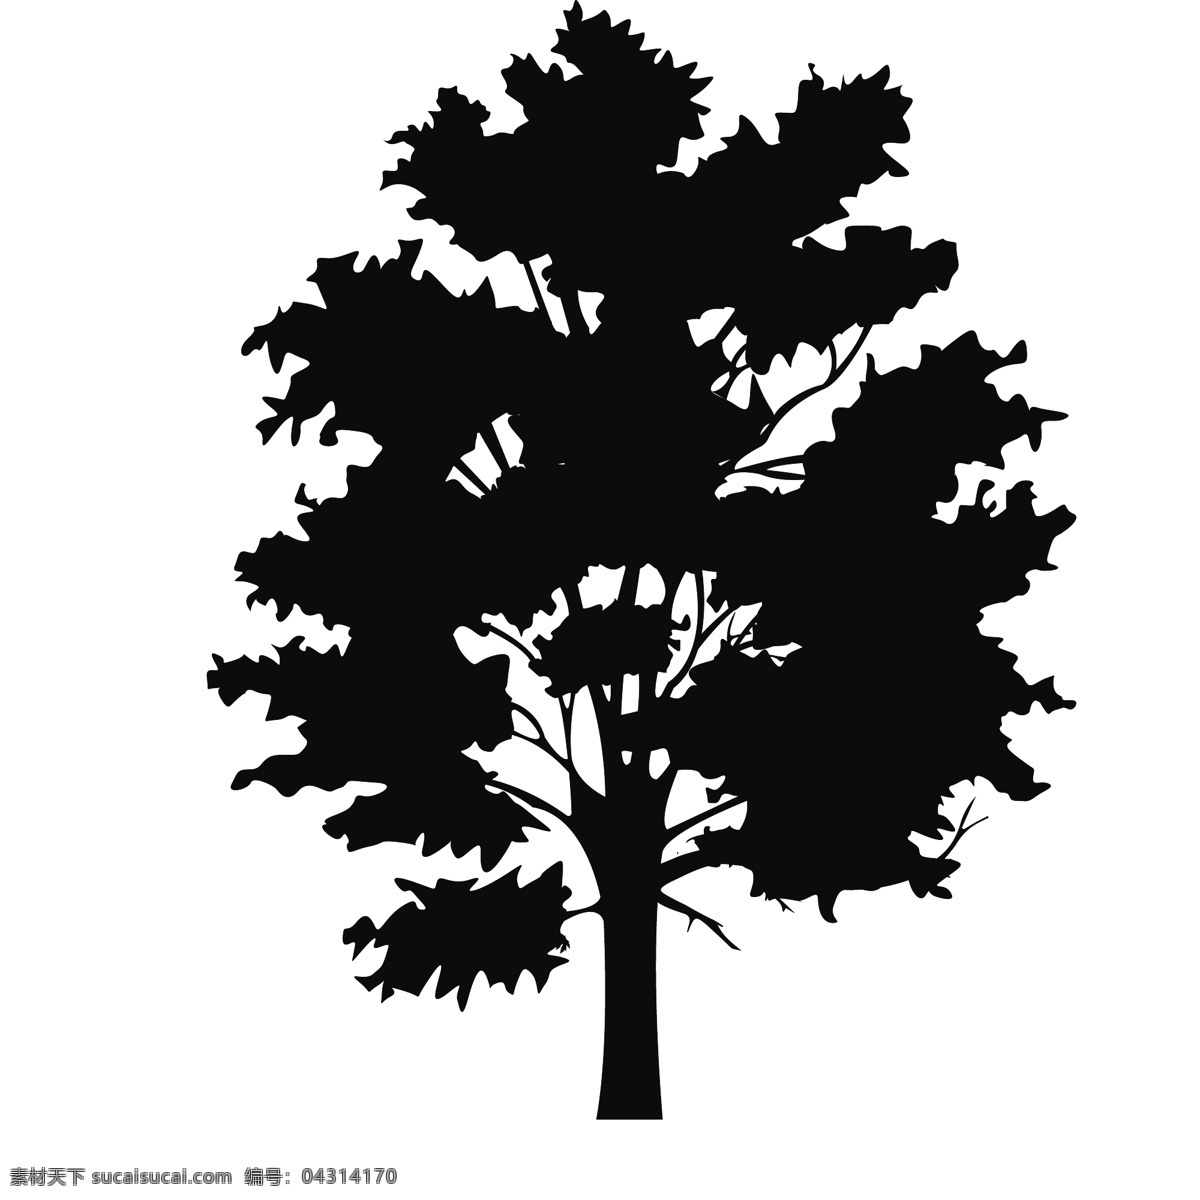 植物树木剪影 黑色 创意 装饰图案 植物 树木 树枝 树干 剪影 涂鸦 图案 简约 绘画 树叶 树苗 素描 椰子树 松树 剪纸 波西 米亚 风格 花纹